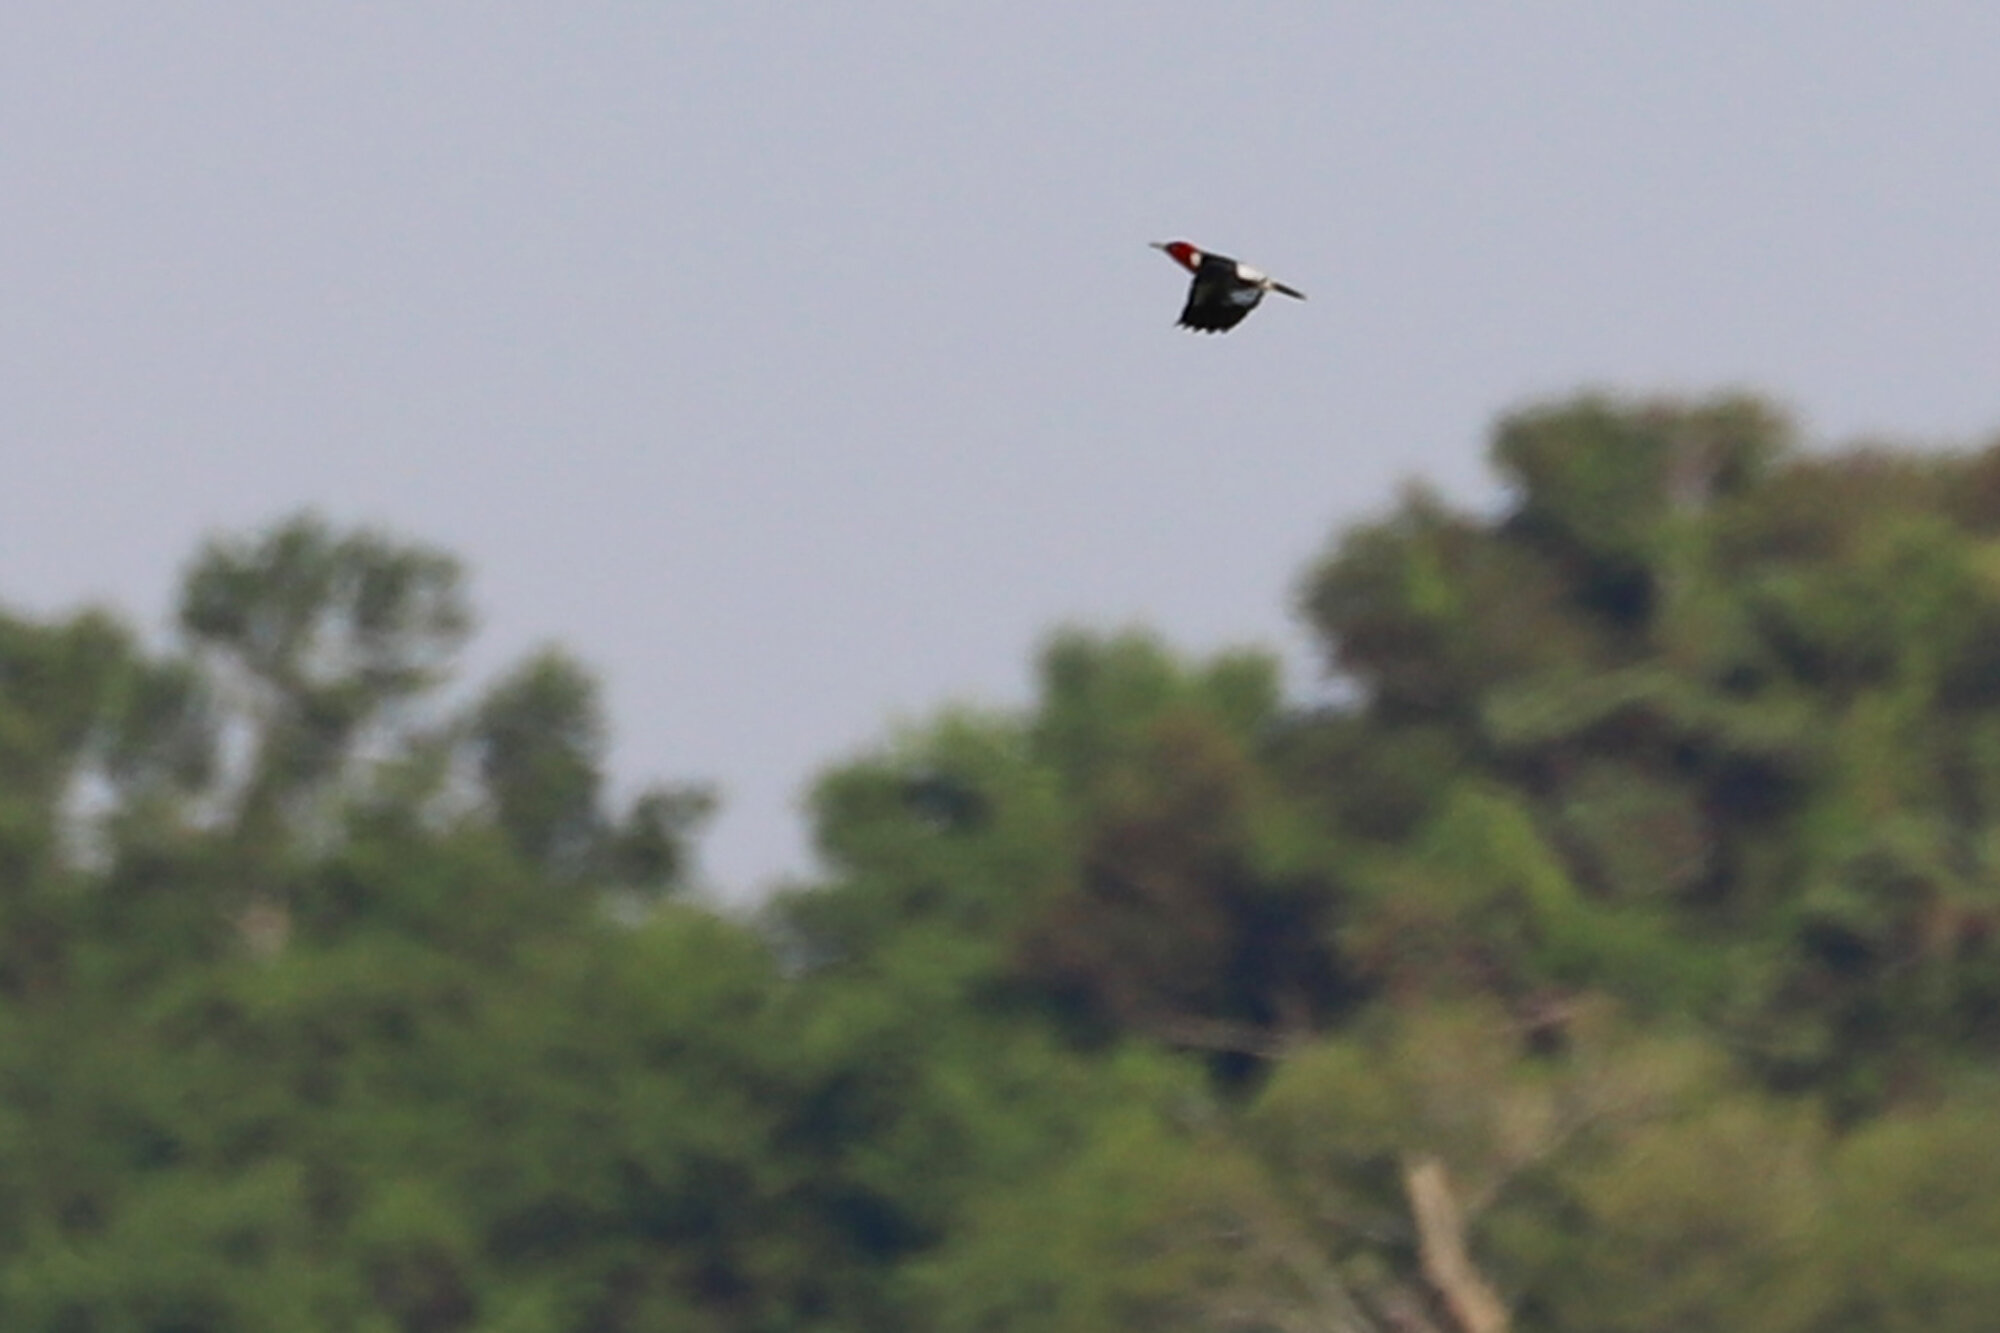  Red-headed Woodpecker / Back Bay NWR / 12 Jul 